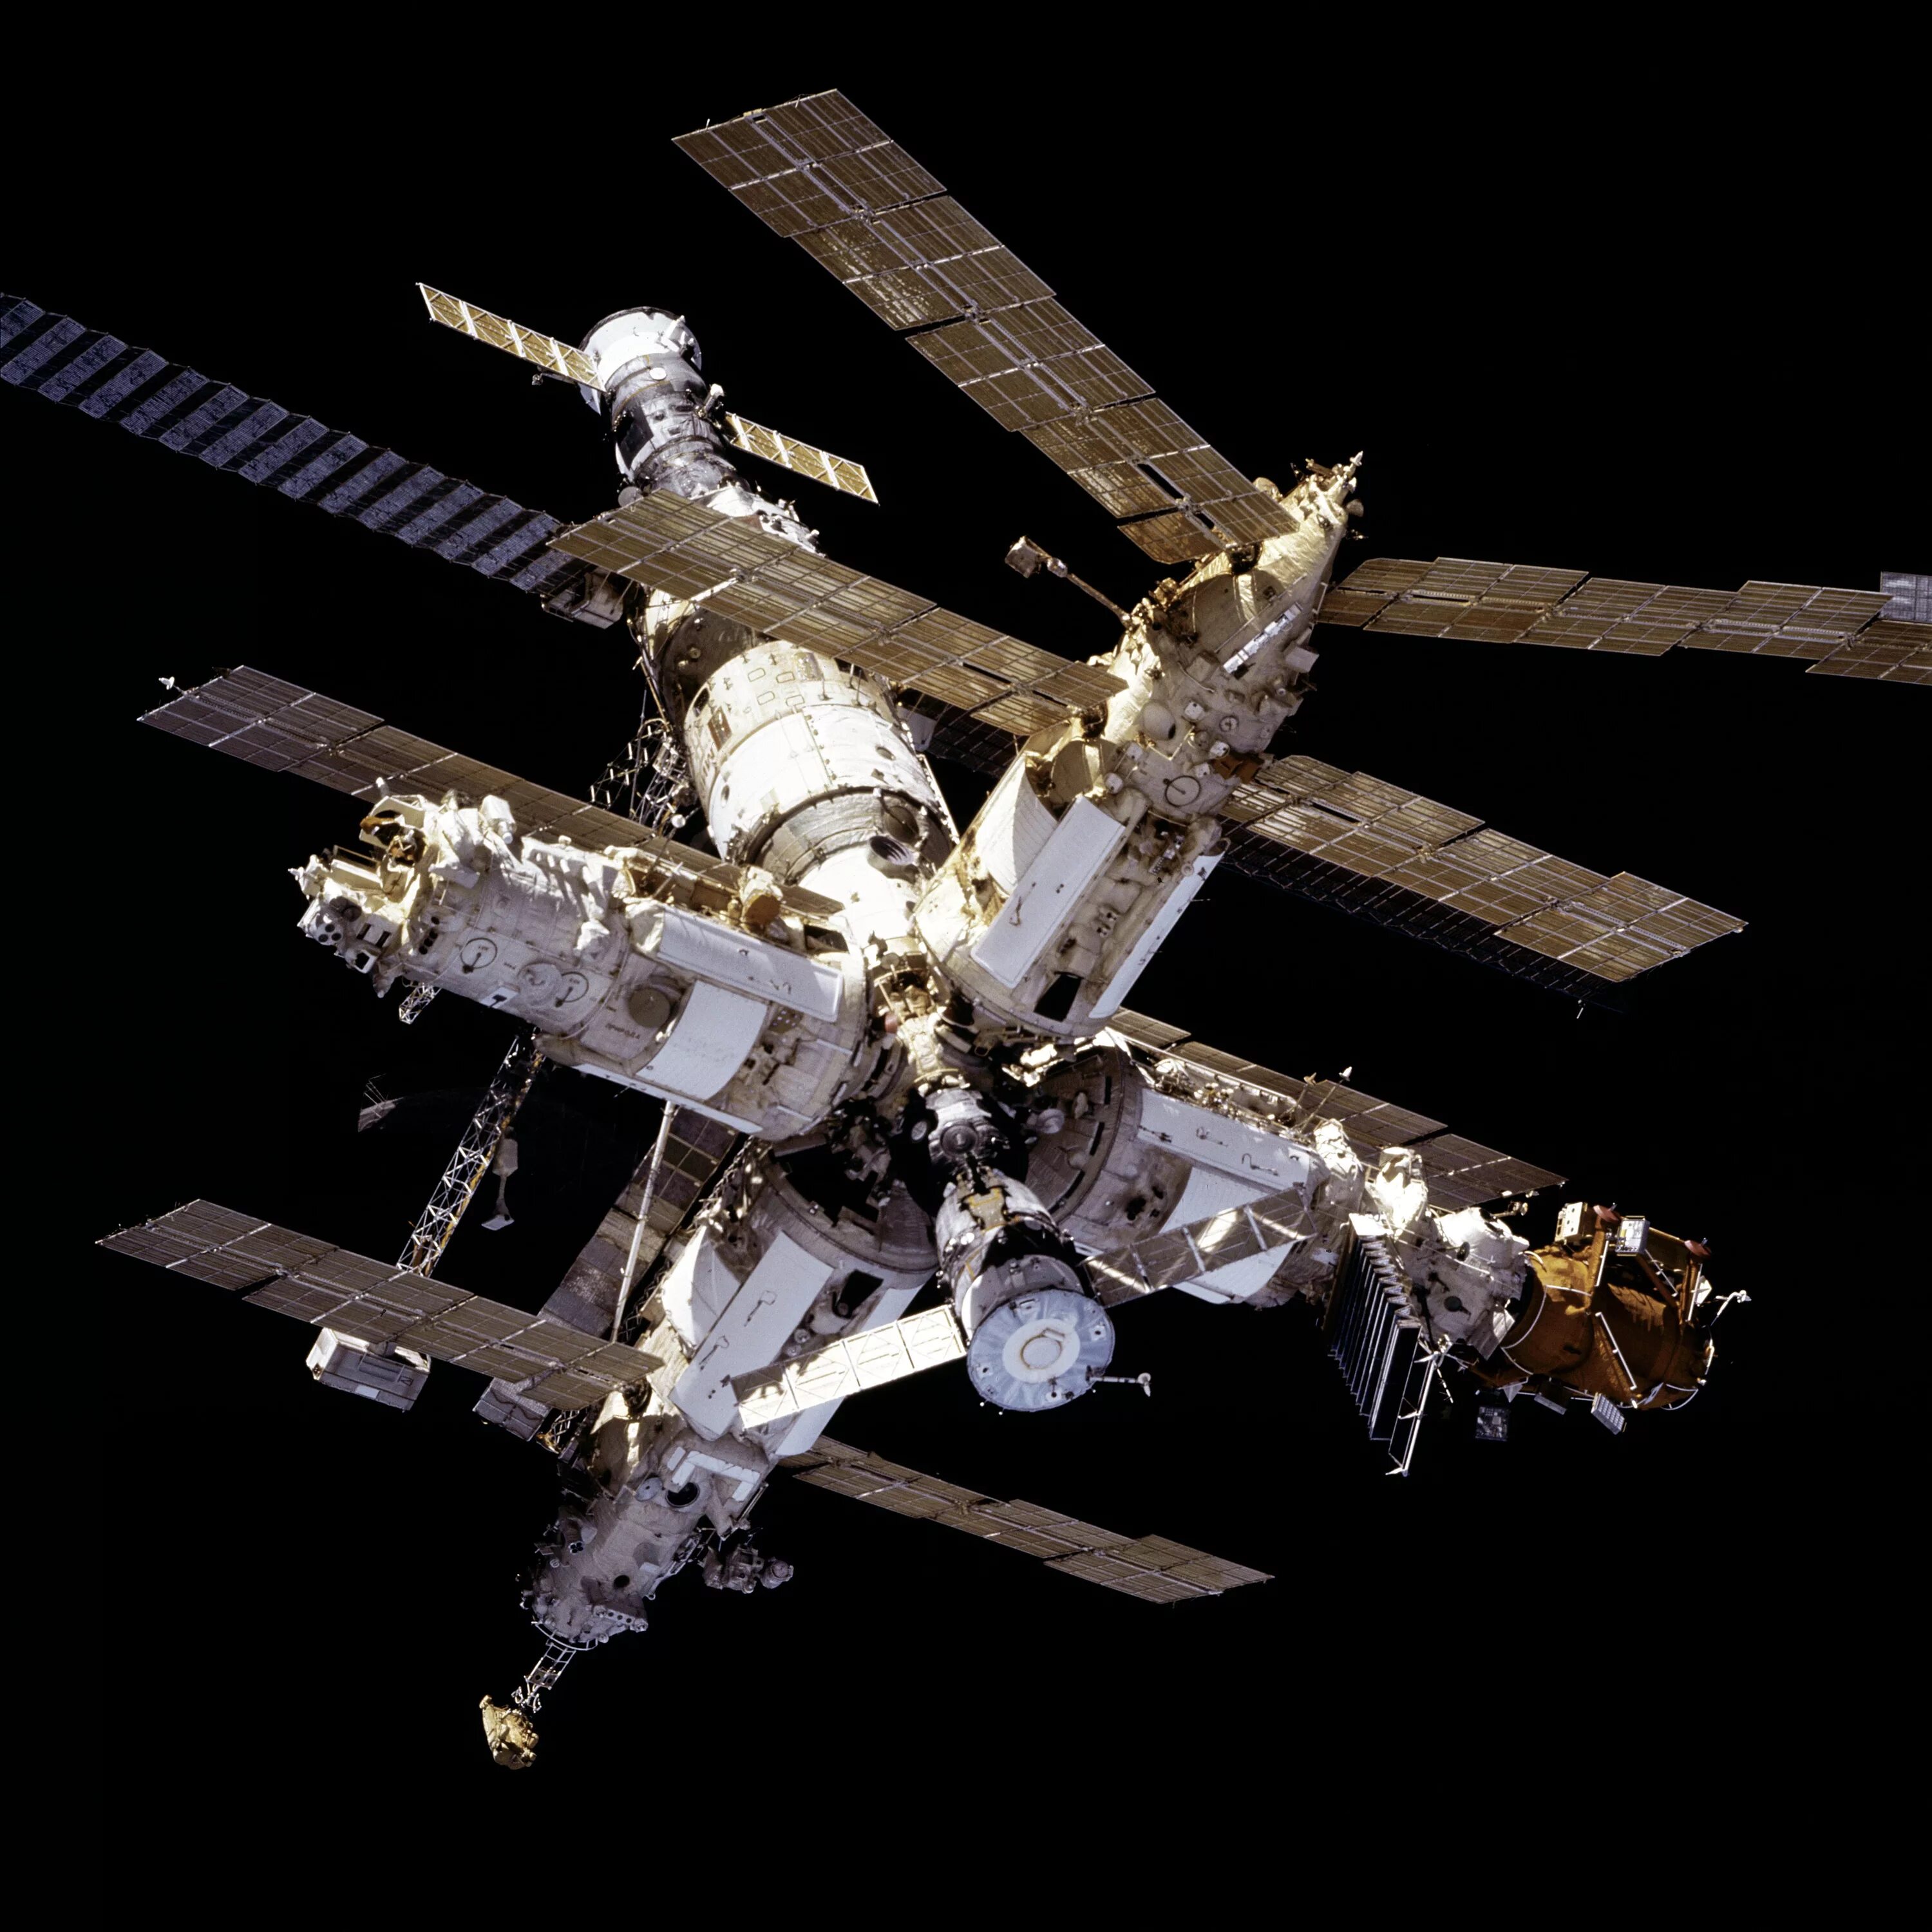 Орбитальная станция мир 1986. 1986 Запущена Советская орбитальная станция «мир». Модуль Квант-1 станции мир. Базовый блок орбитальной станции «мир». Станция мир 1